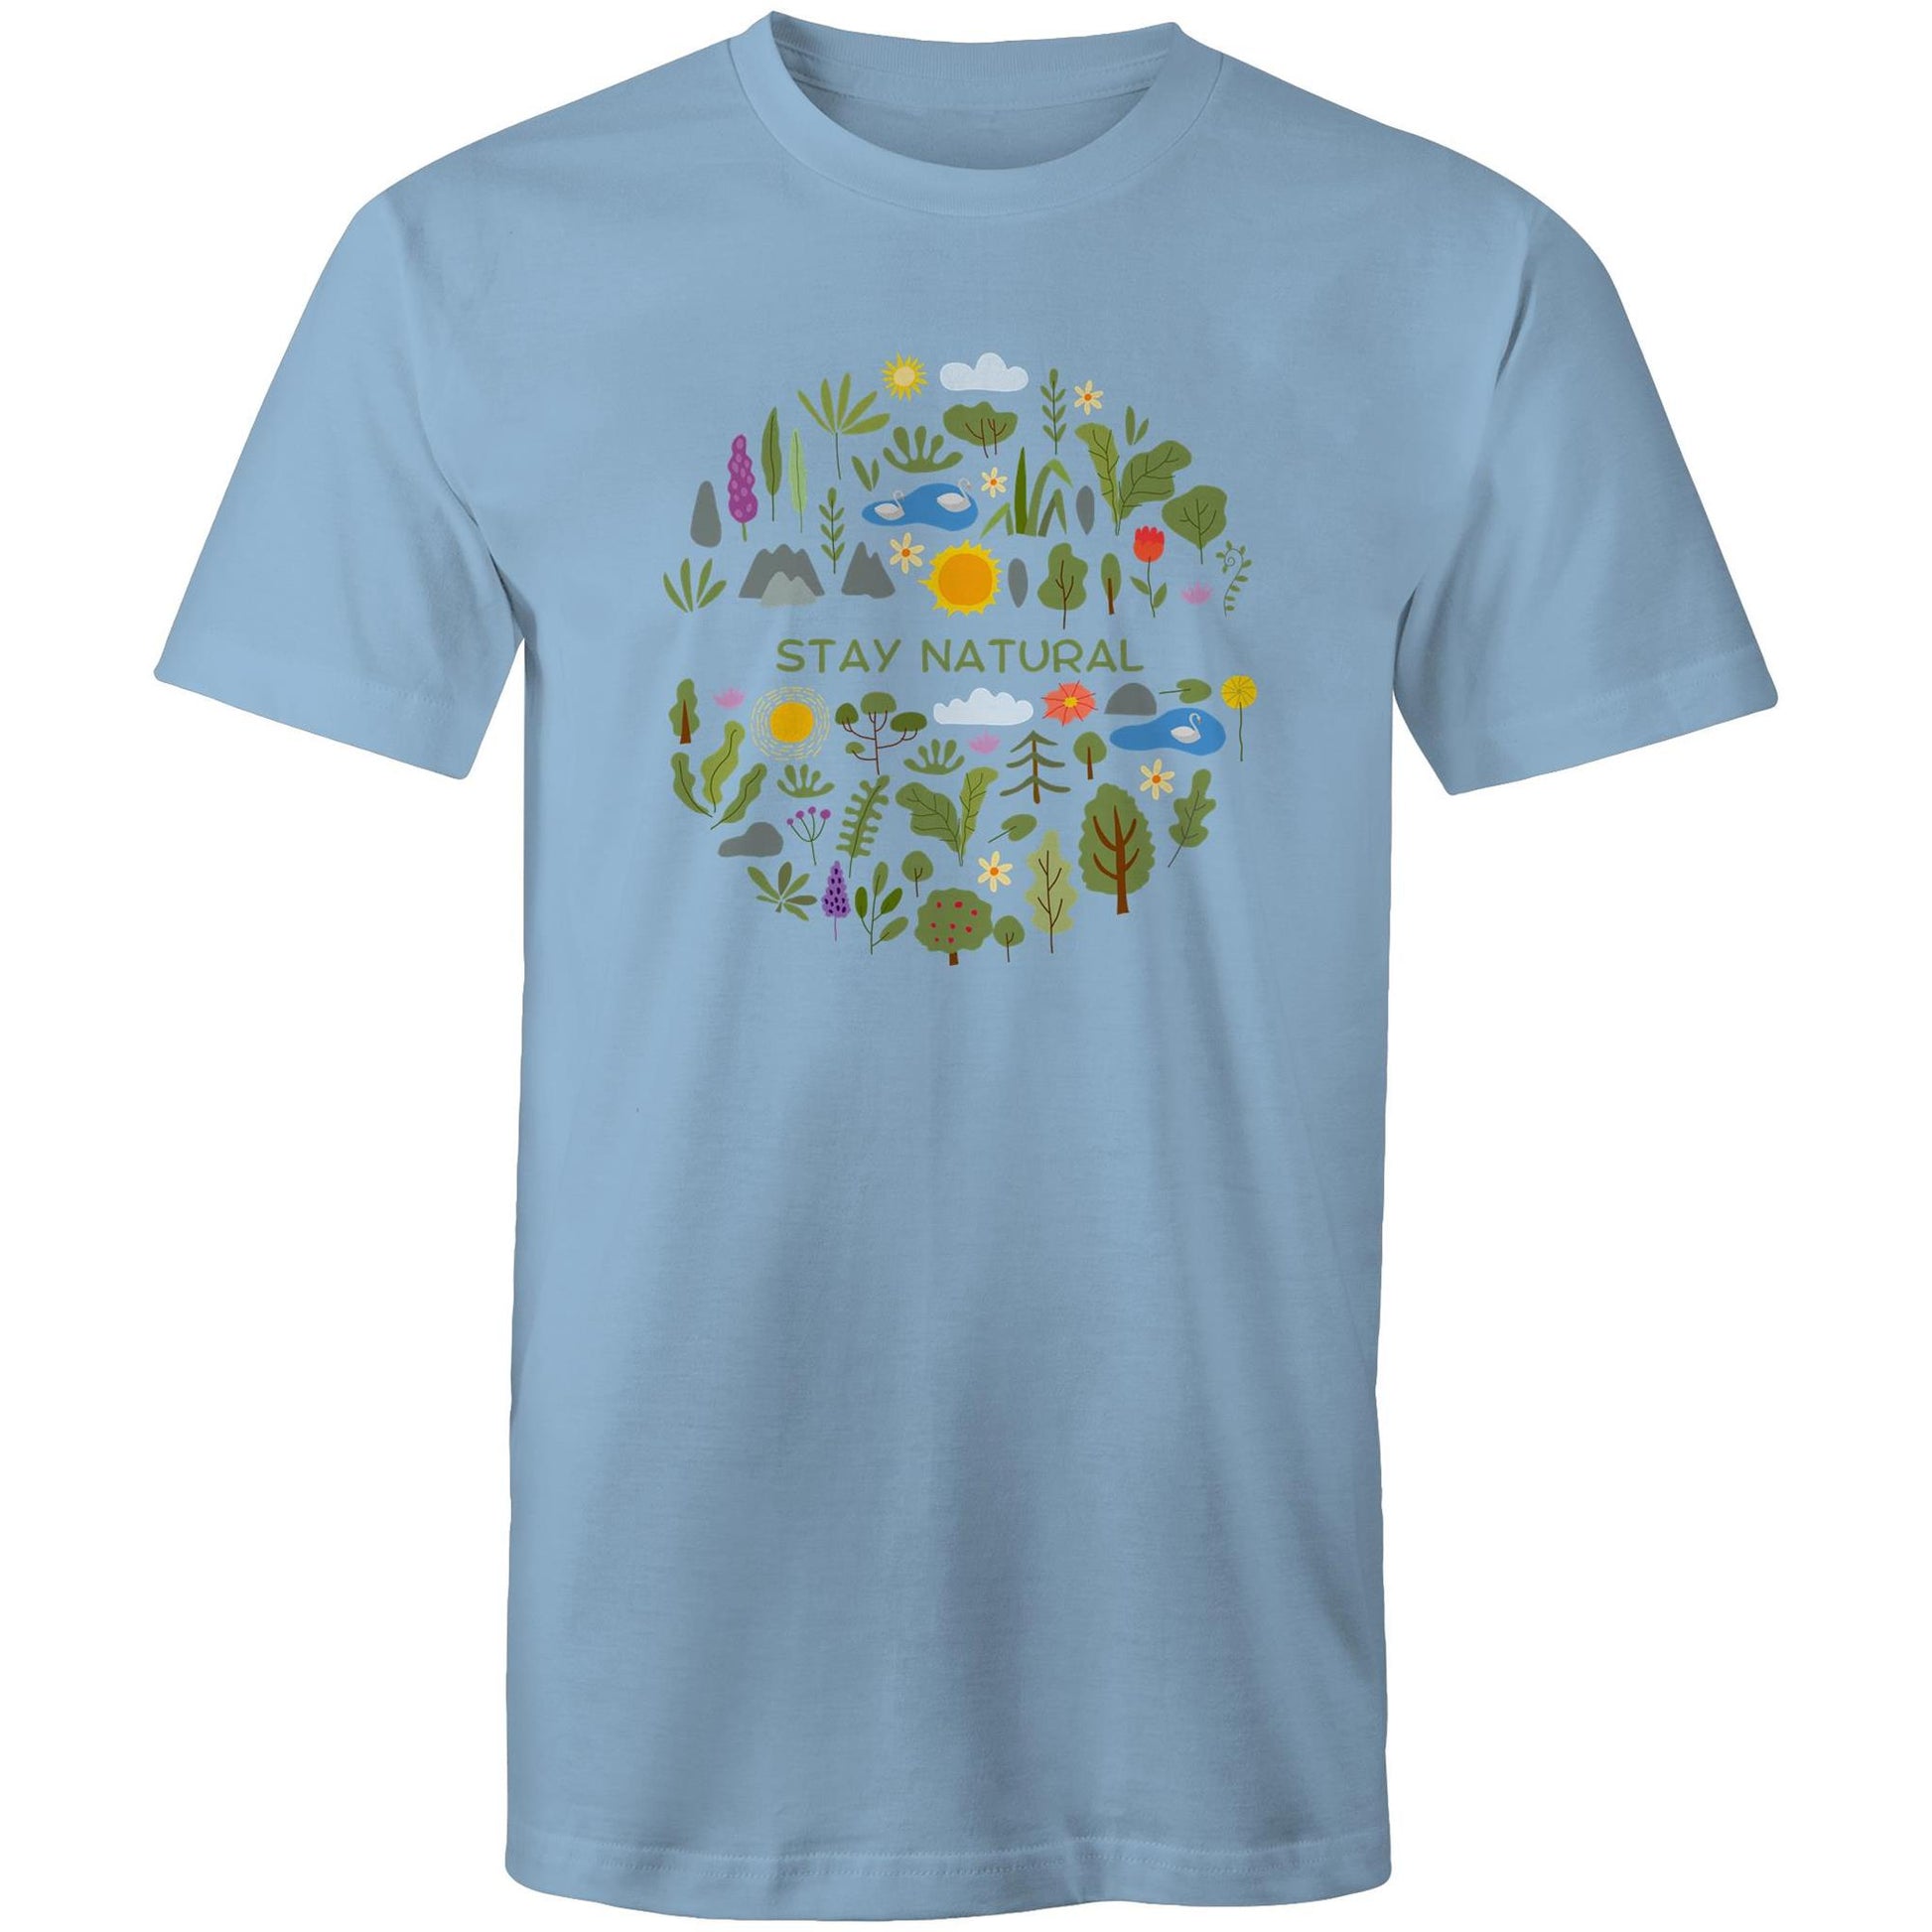 Stay Natural - Mens T-Shirt Carolina Blue Mens T-shirt Environment Plants